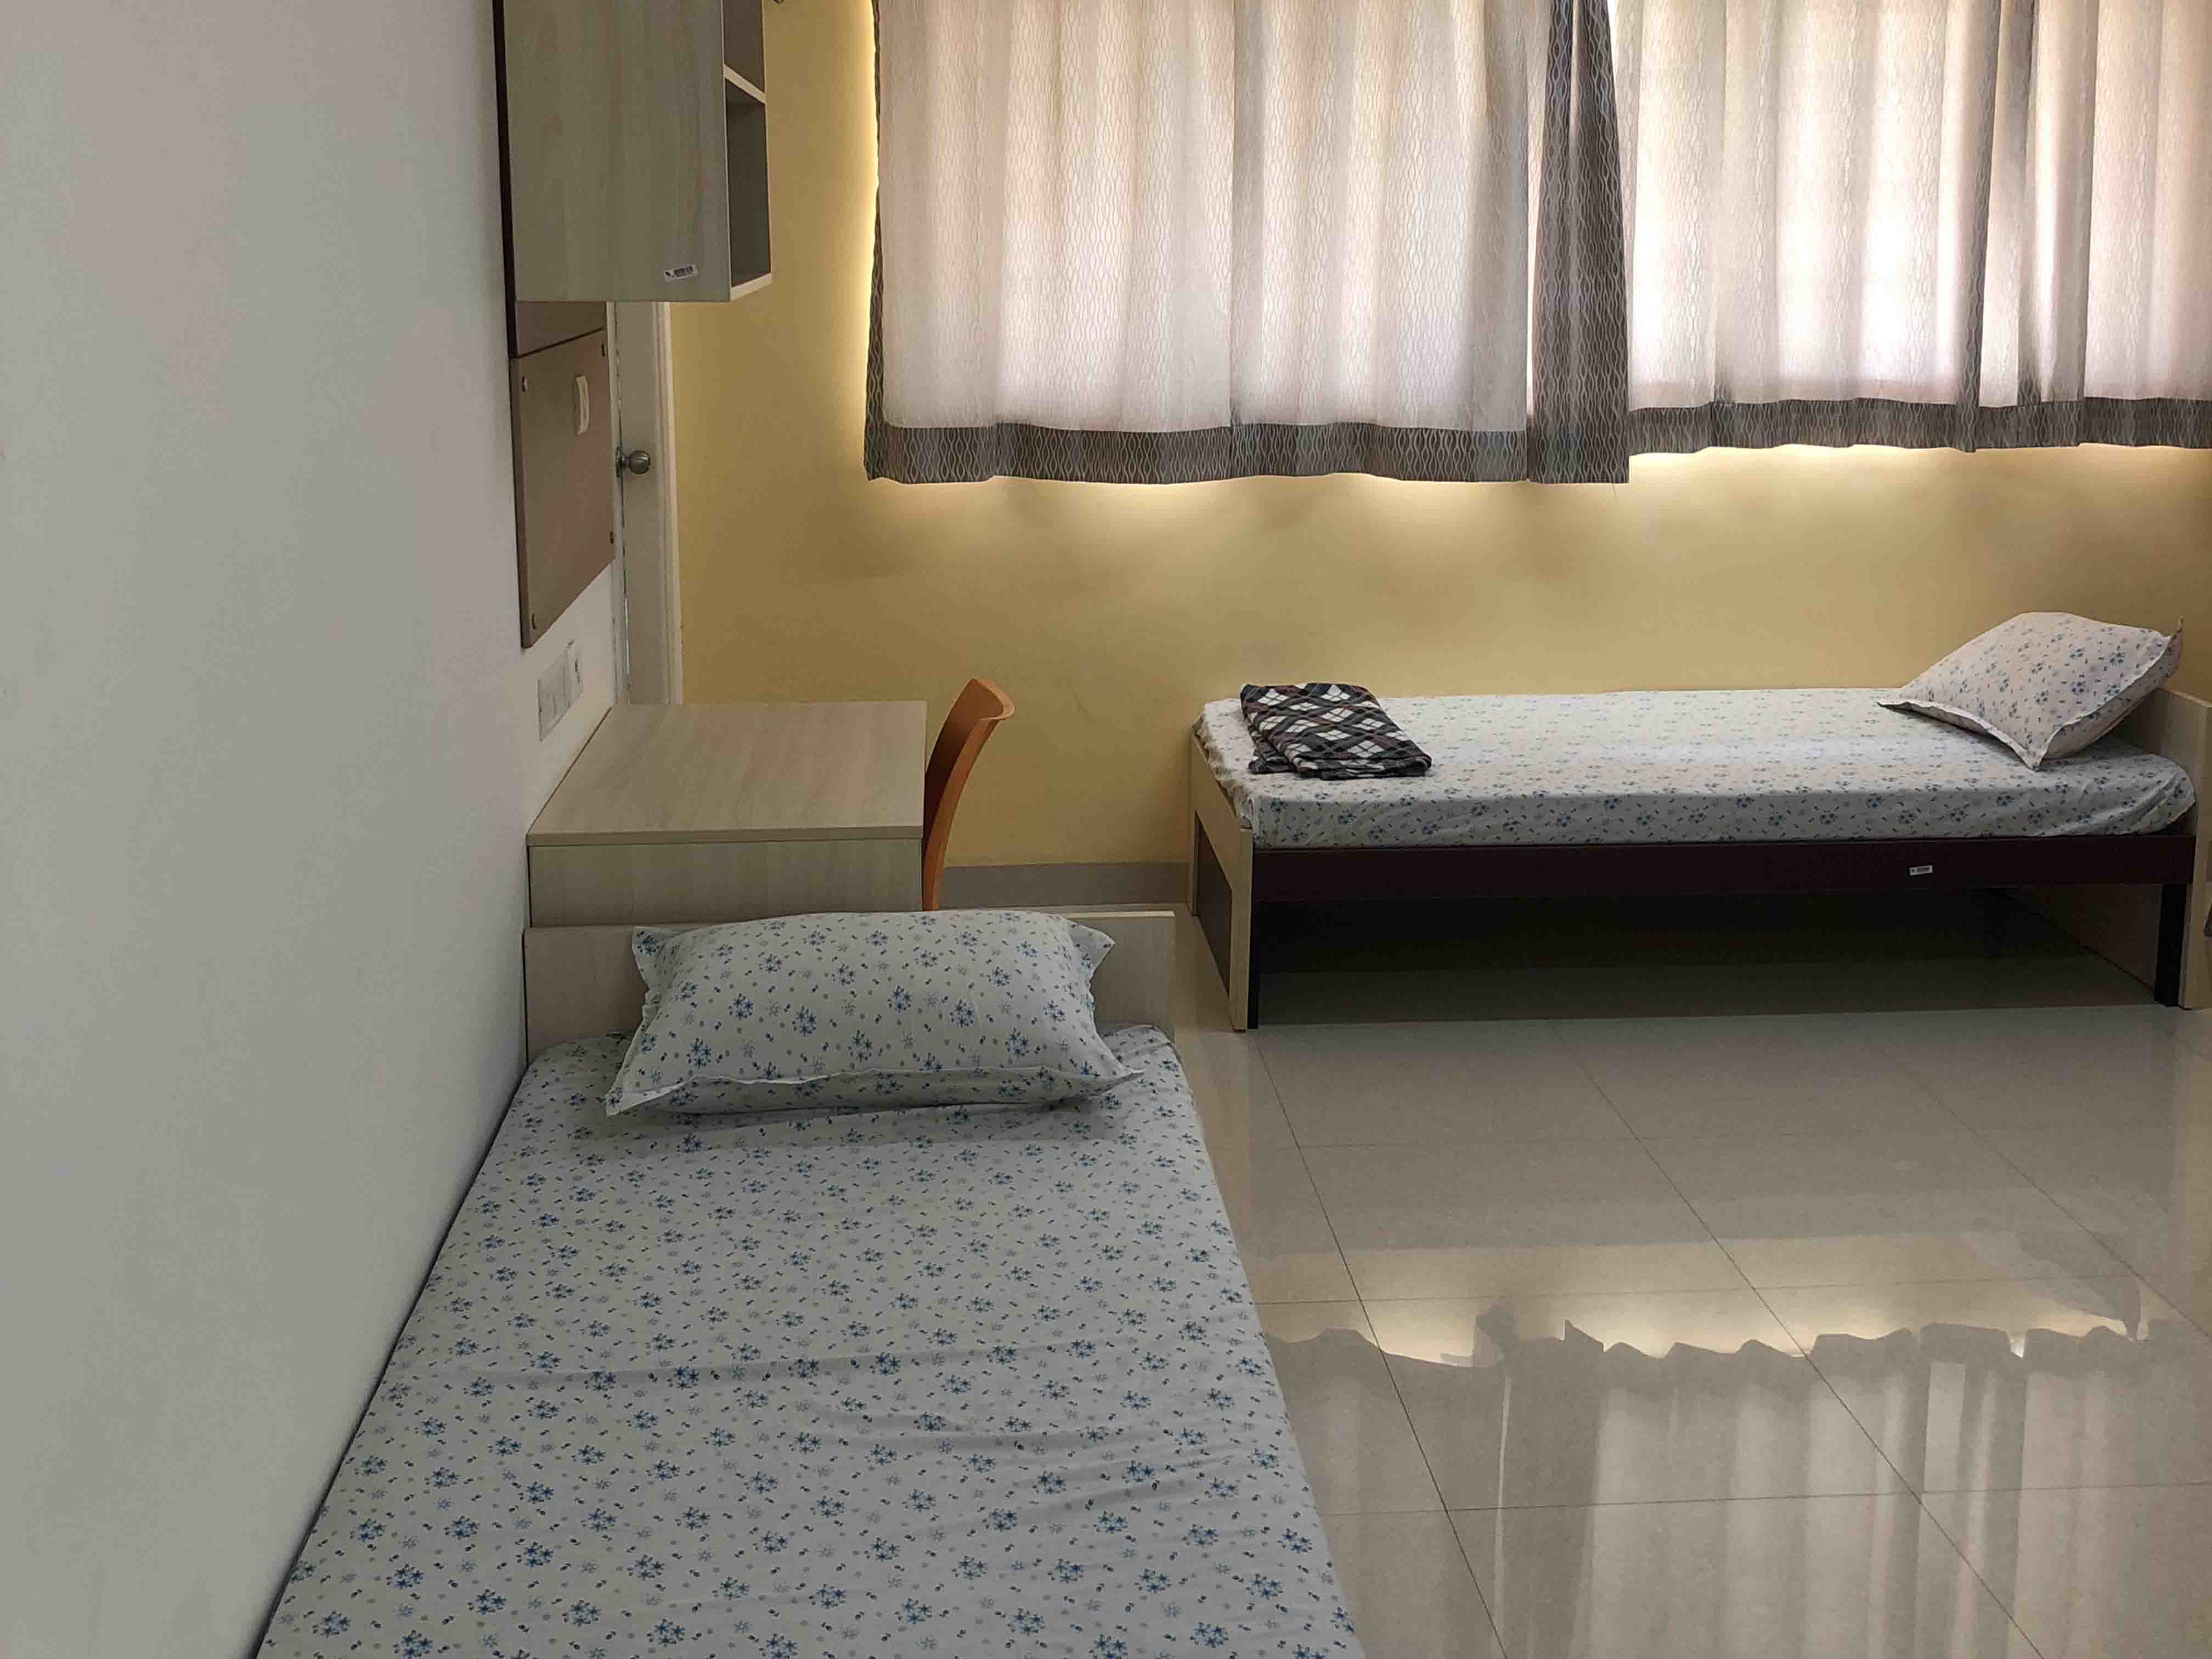 Shared Hostel Rooms - SIBM Hyderabad